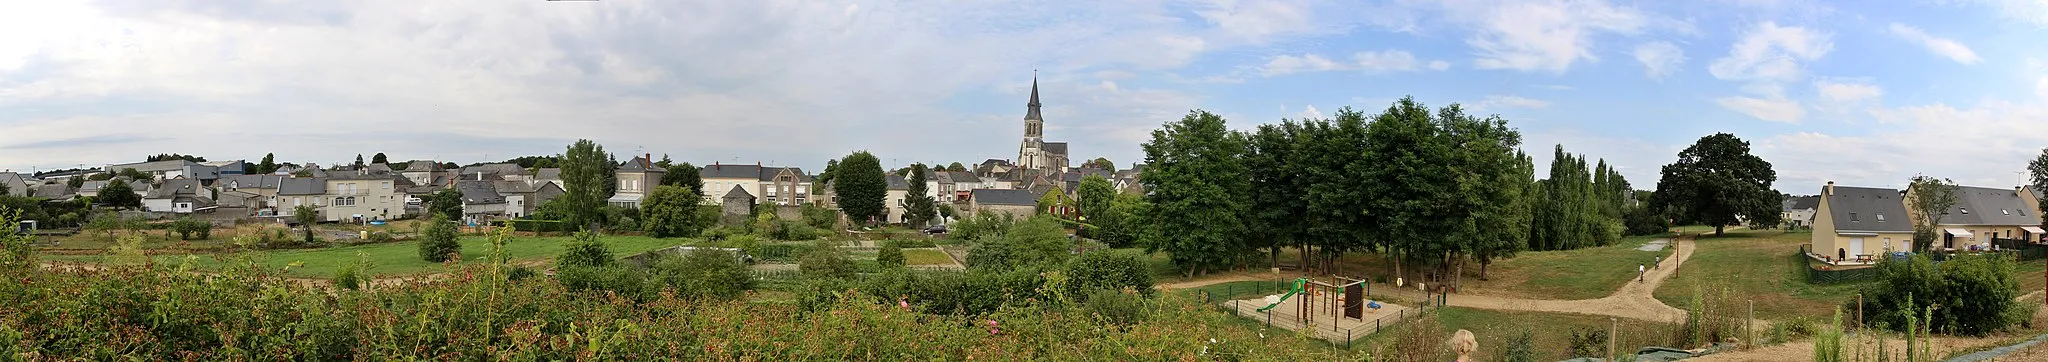 Image of La Membrolle-sur-Longuenée